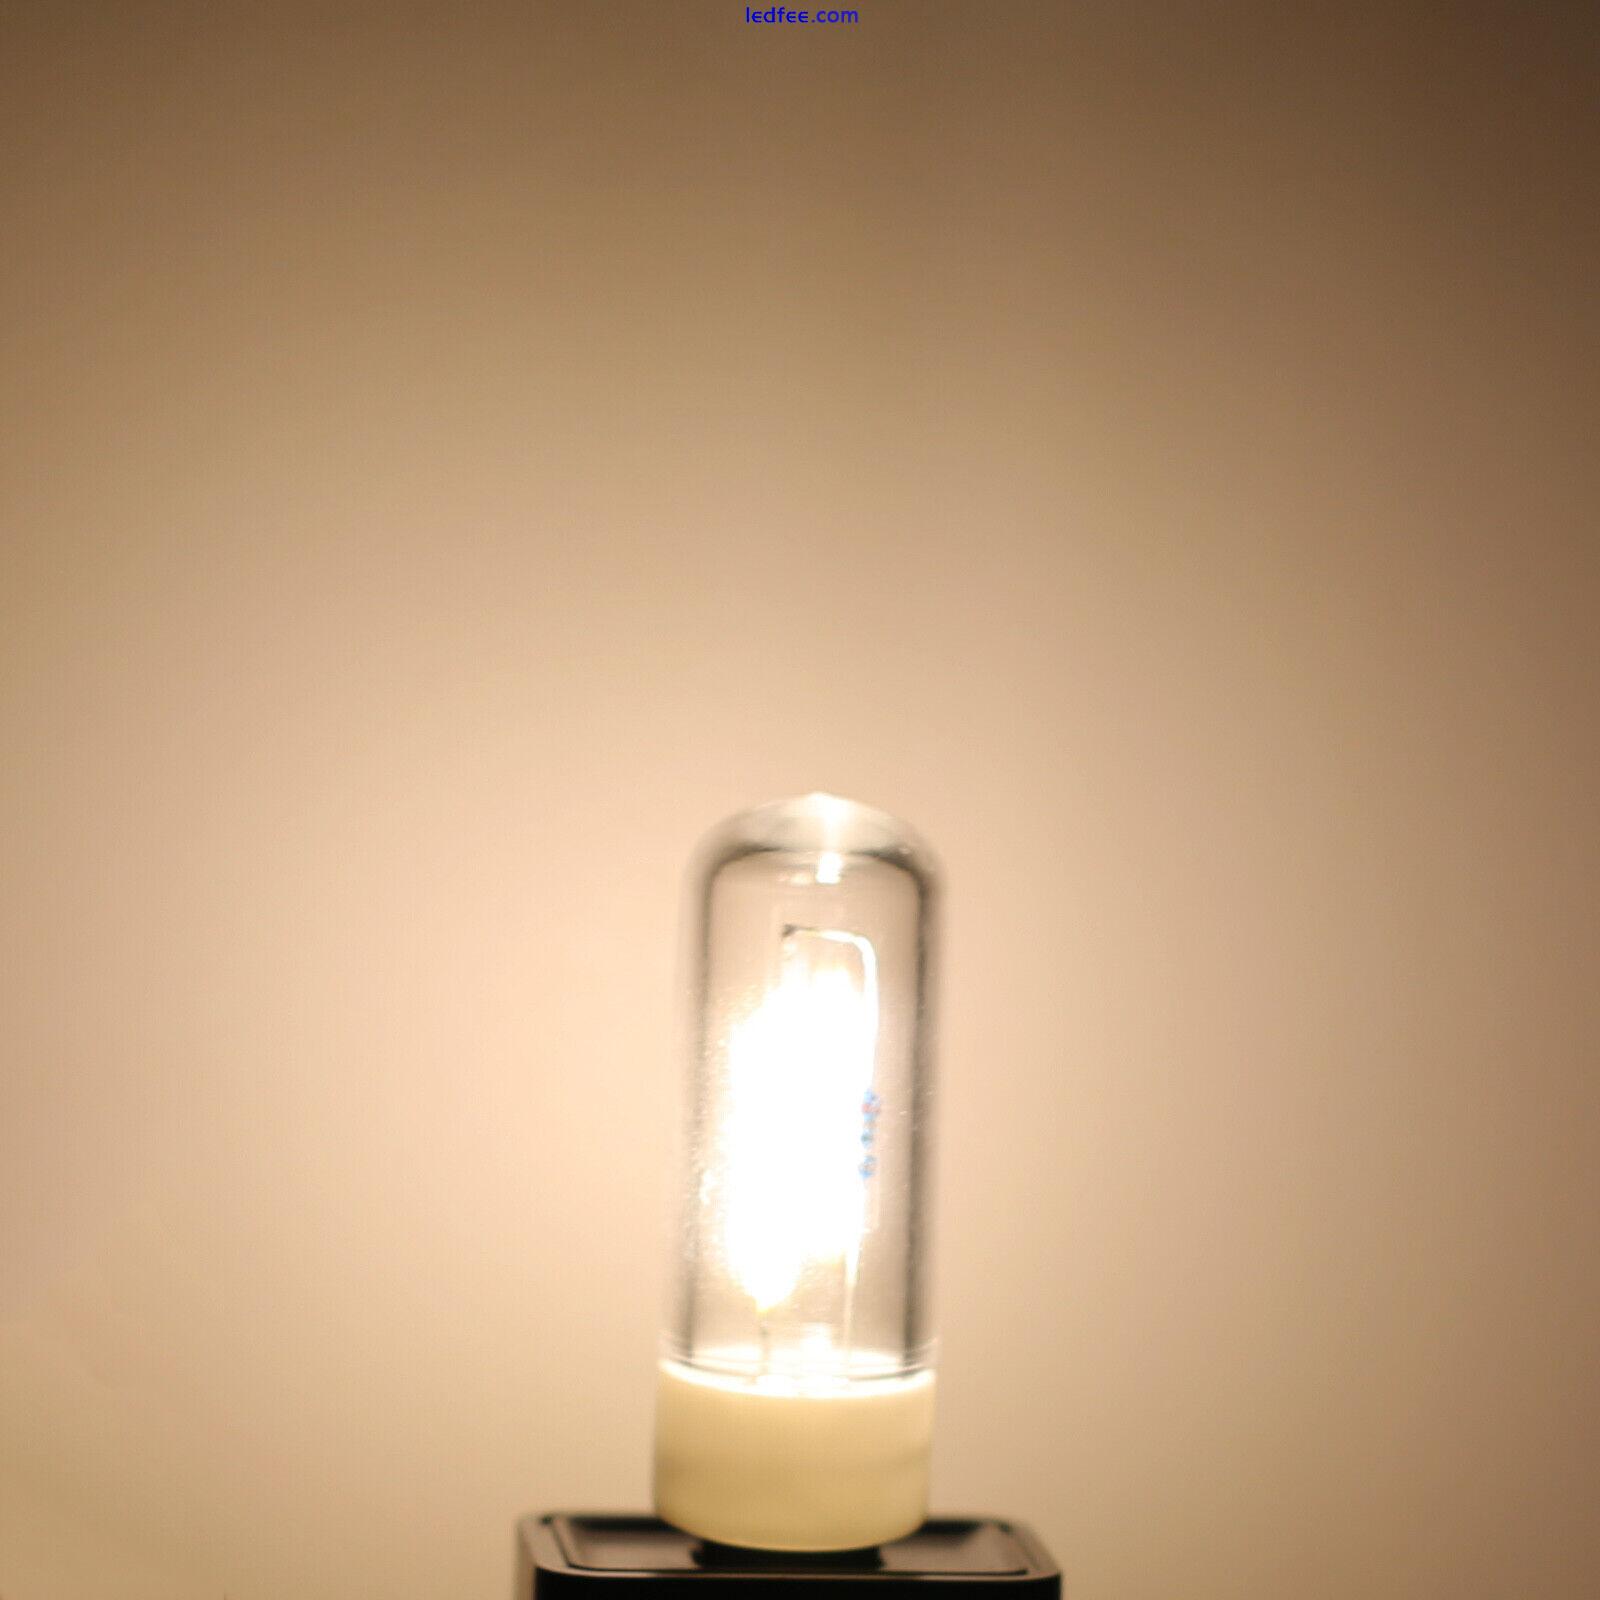 5V USB Mini LED COB Light Bulb Filament Portable Night Reading Lighting Lamp BC 2 